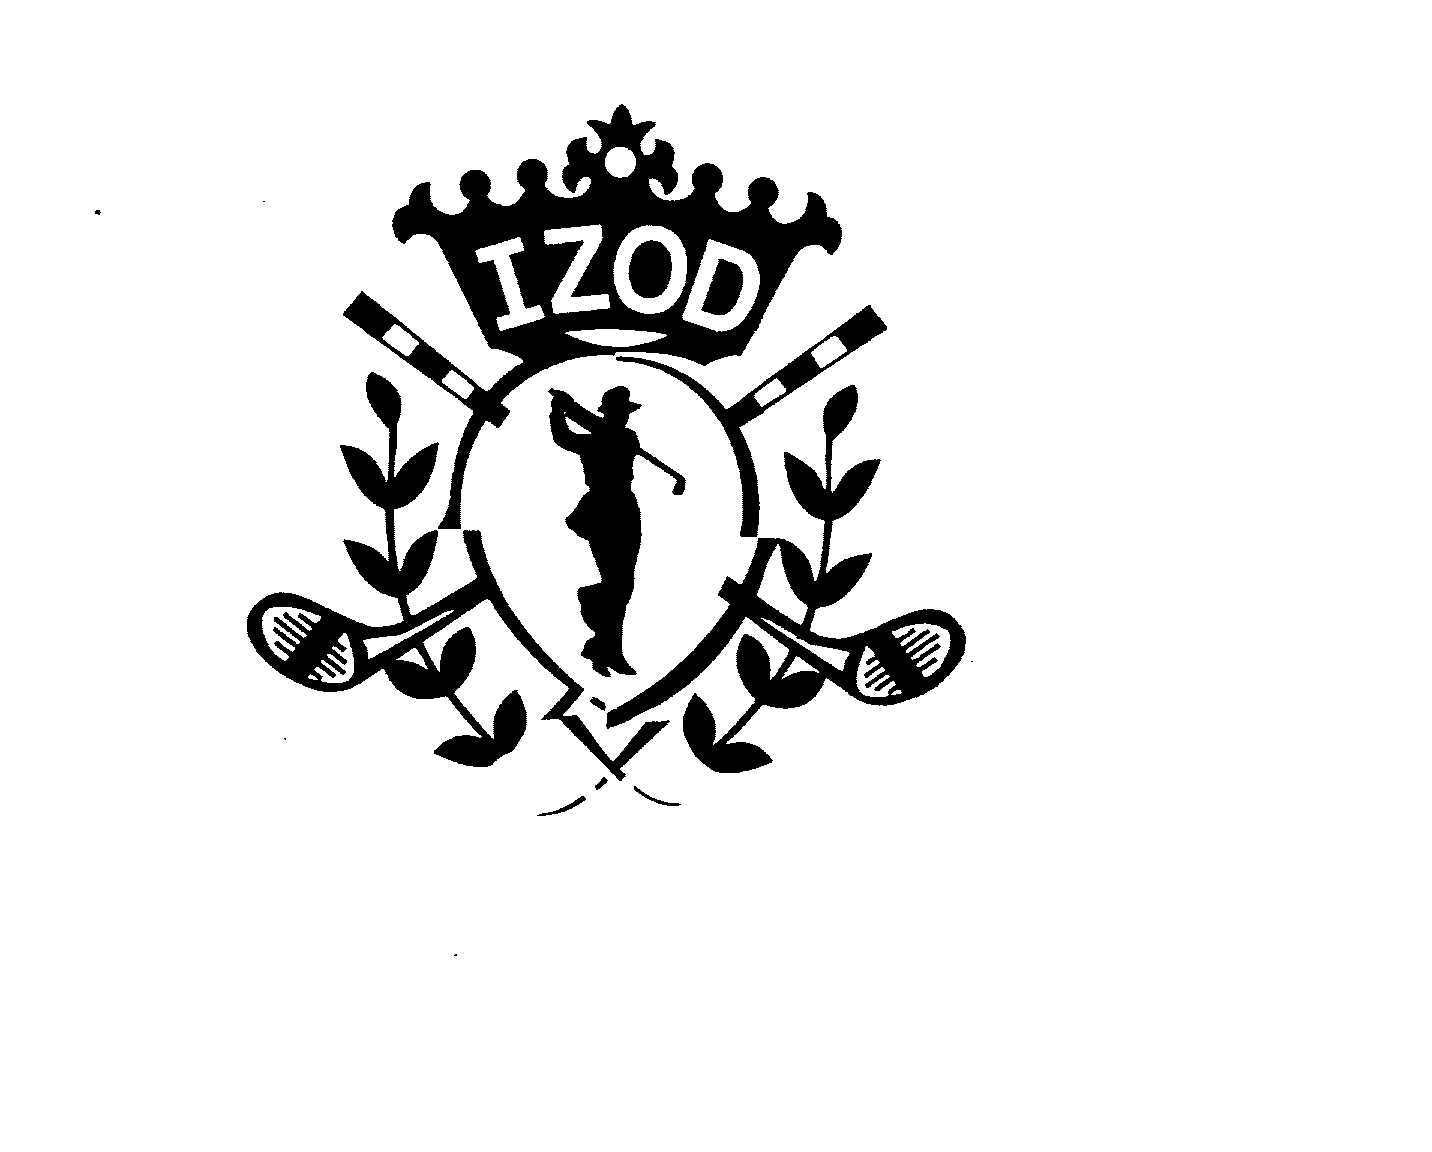 IZOD - Phillips-Van Heusen Corporation Trademark Registration